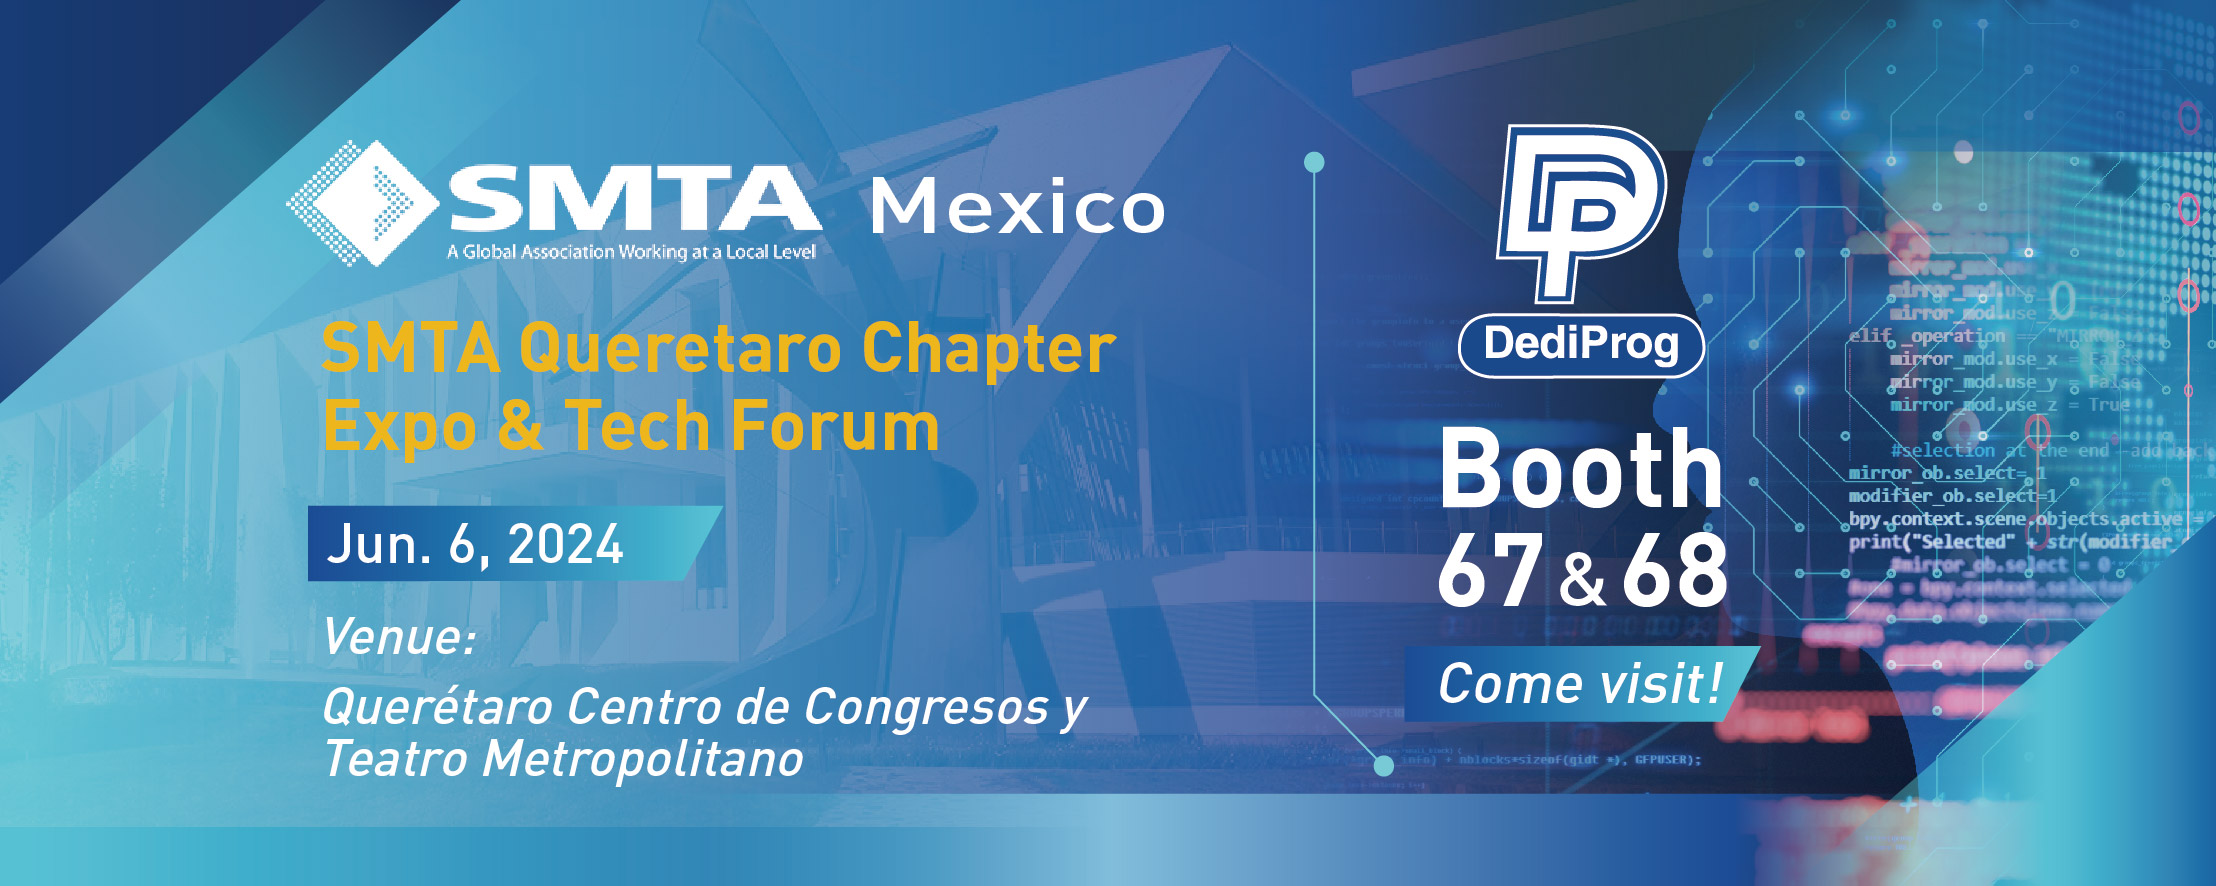 SMTA Mexico 2024 Queretaro Chapter